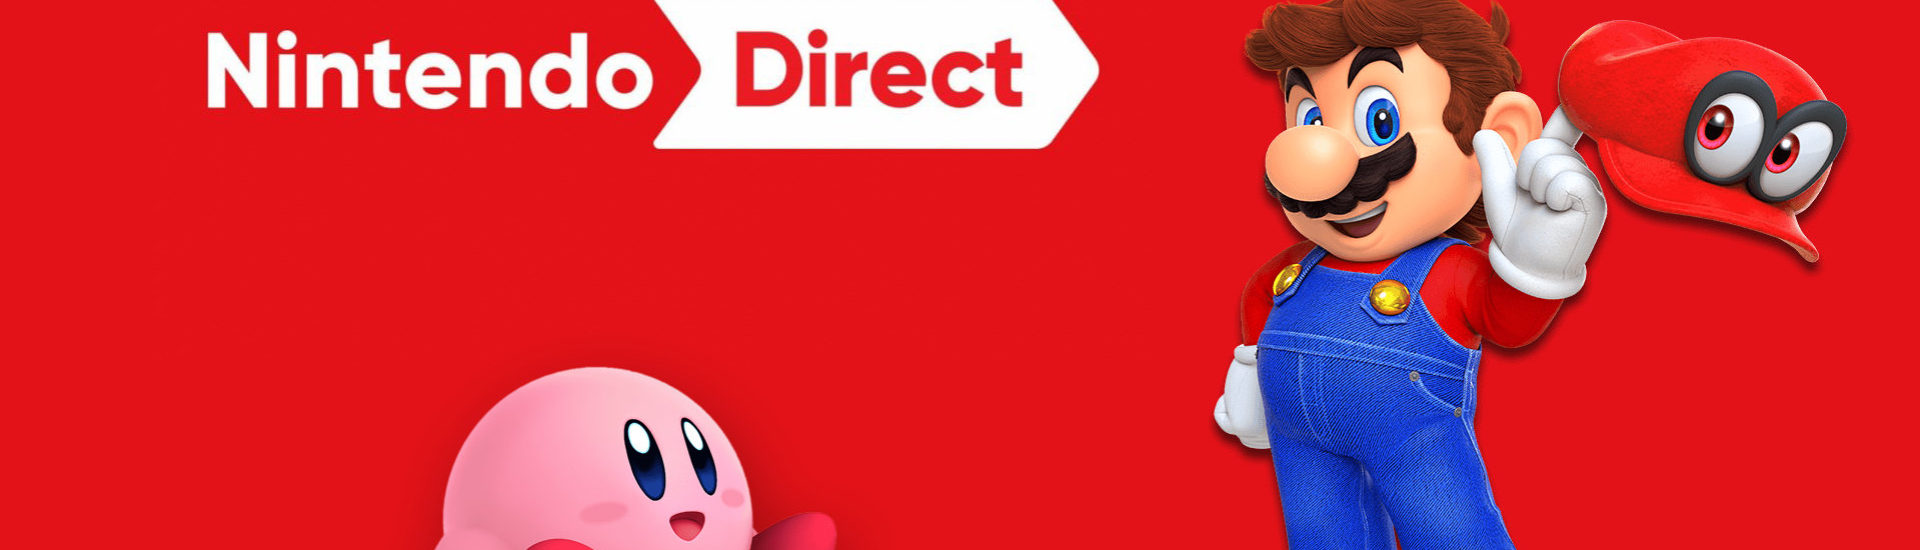 Nintendo Direct: Präsentation neuer Releases beginnt in wenigen Stunden